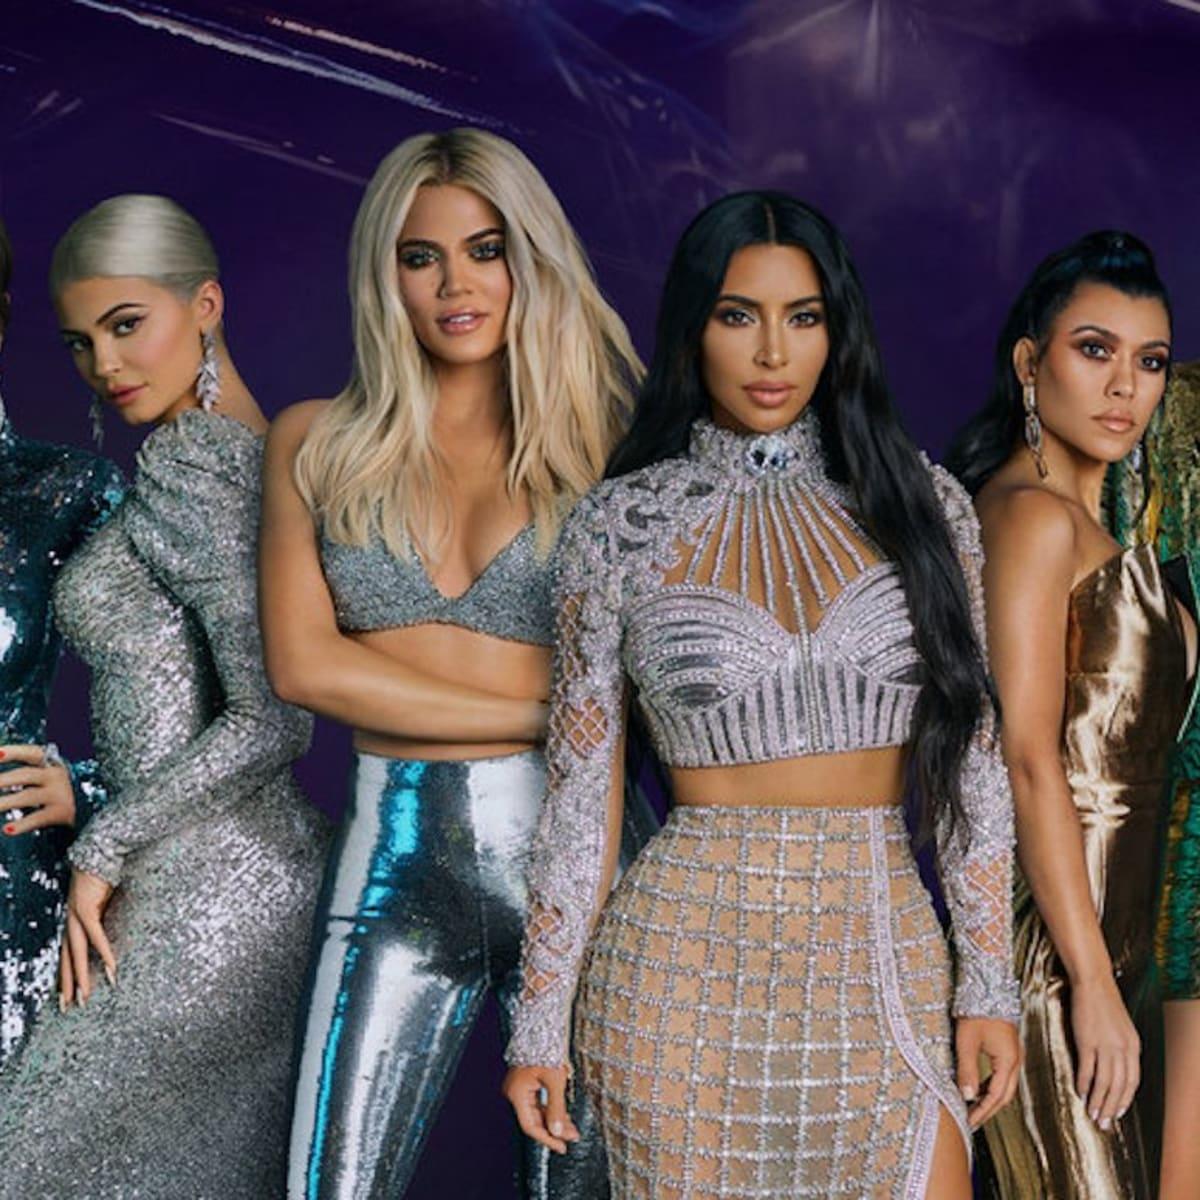 Fanii lui Kylie Jenner cred ca noul teaser pentru "The Kardashians" este despre Timothée Chalamet